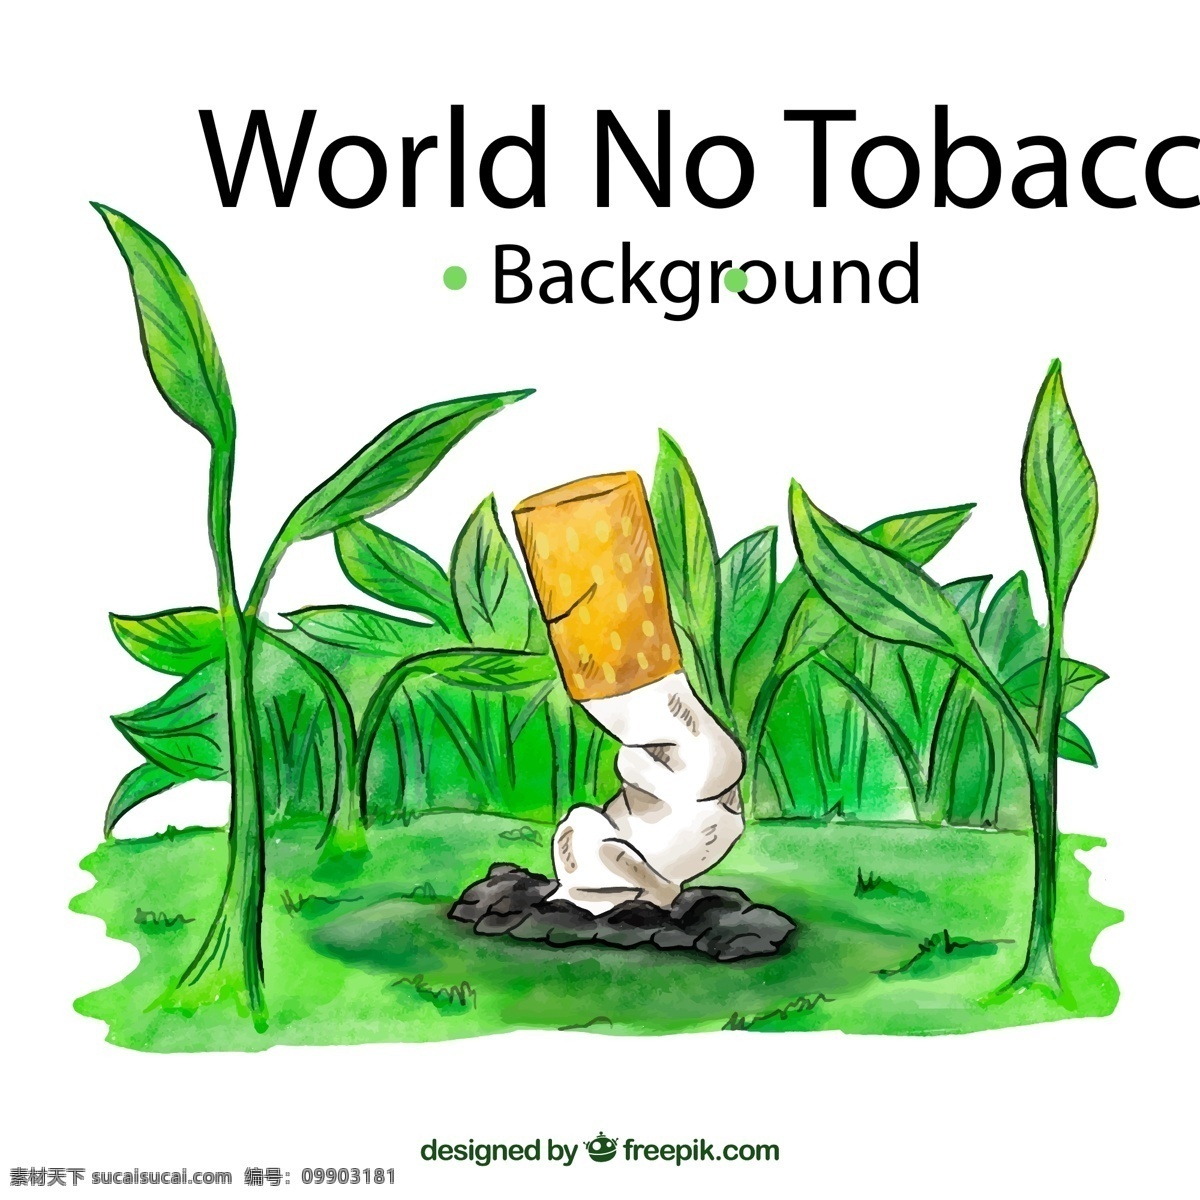 彩绘 世界 无烟日 草地 世界无烟日 禁烟 香烟 矢量图 源文件 矢量 高清图片